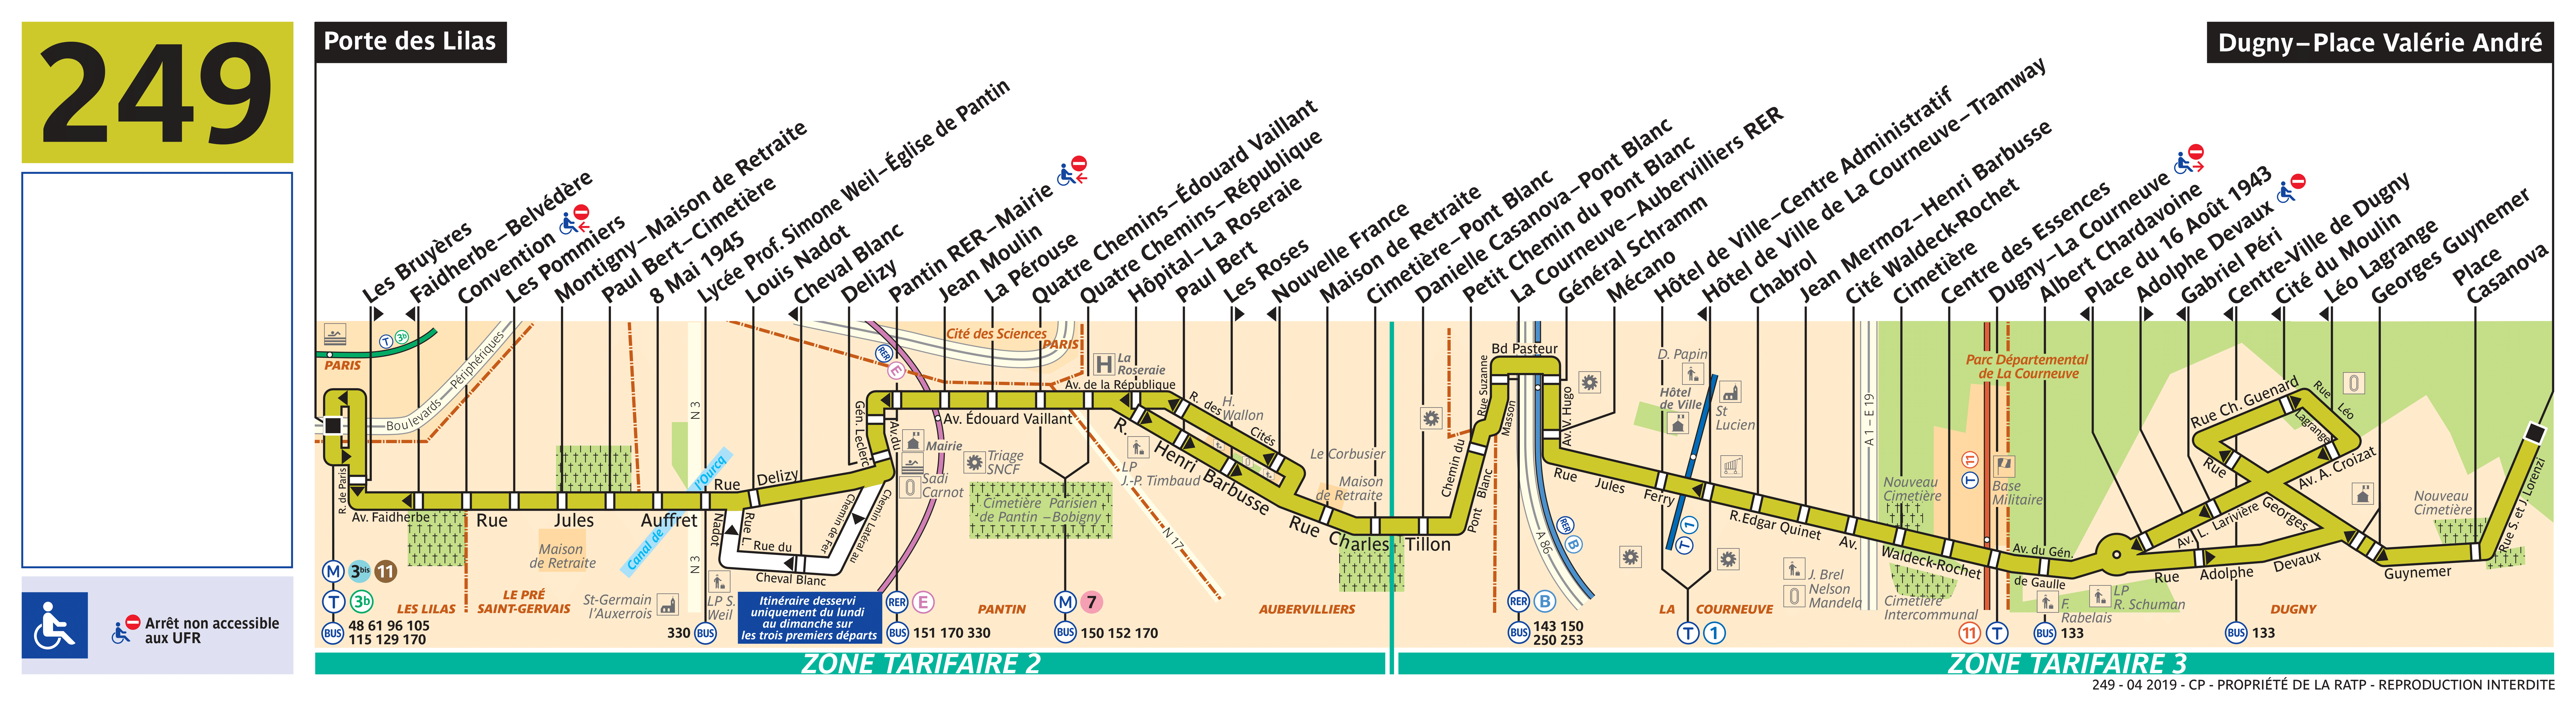 Маршрут автобуса 249 на карте. Автобусы RATP. Автобусный центр RATP. Bus Route Map. 249 Автобус маршрут СПБ.